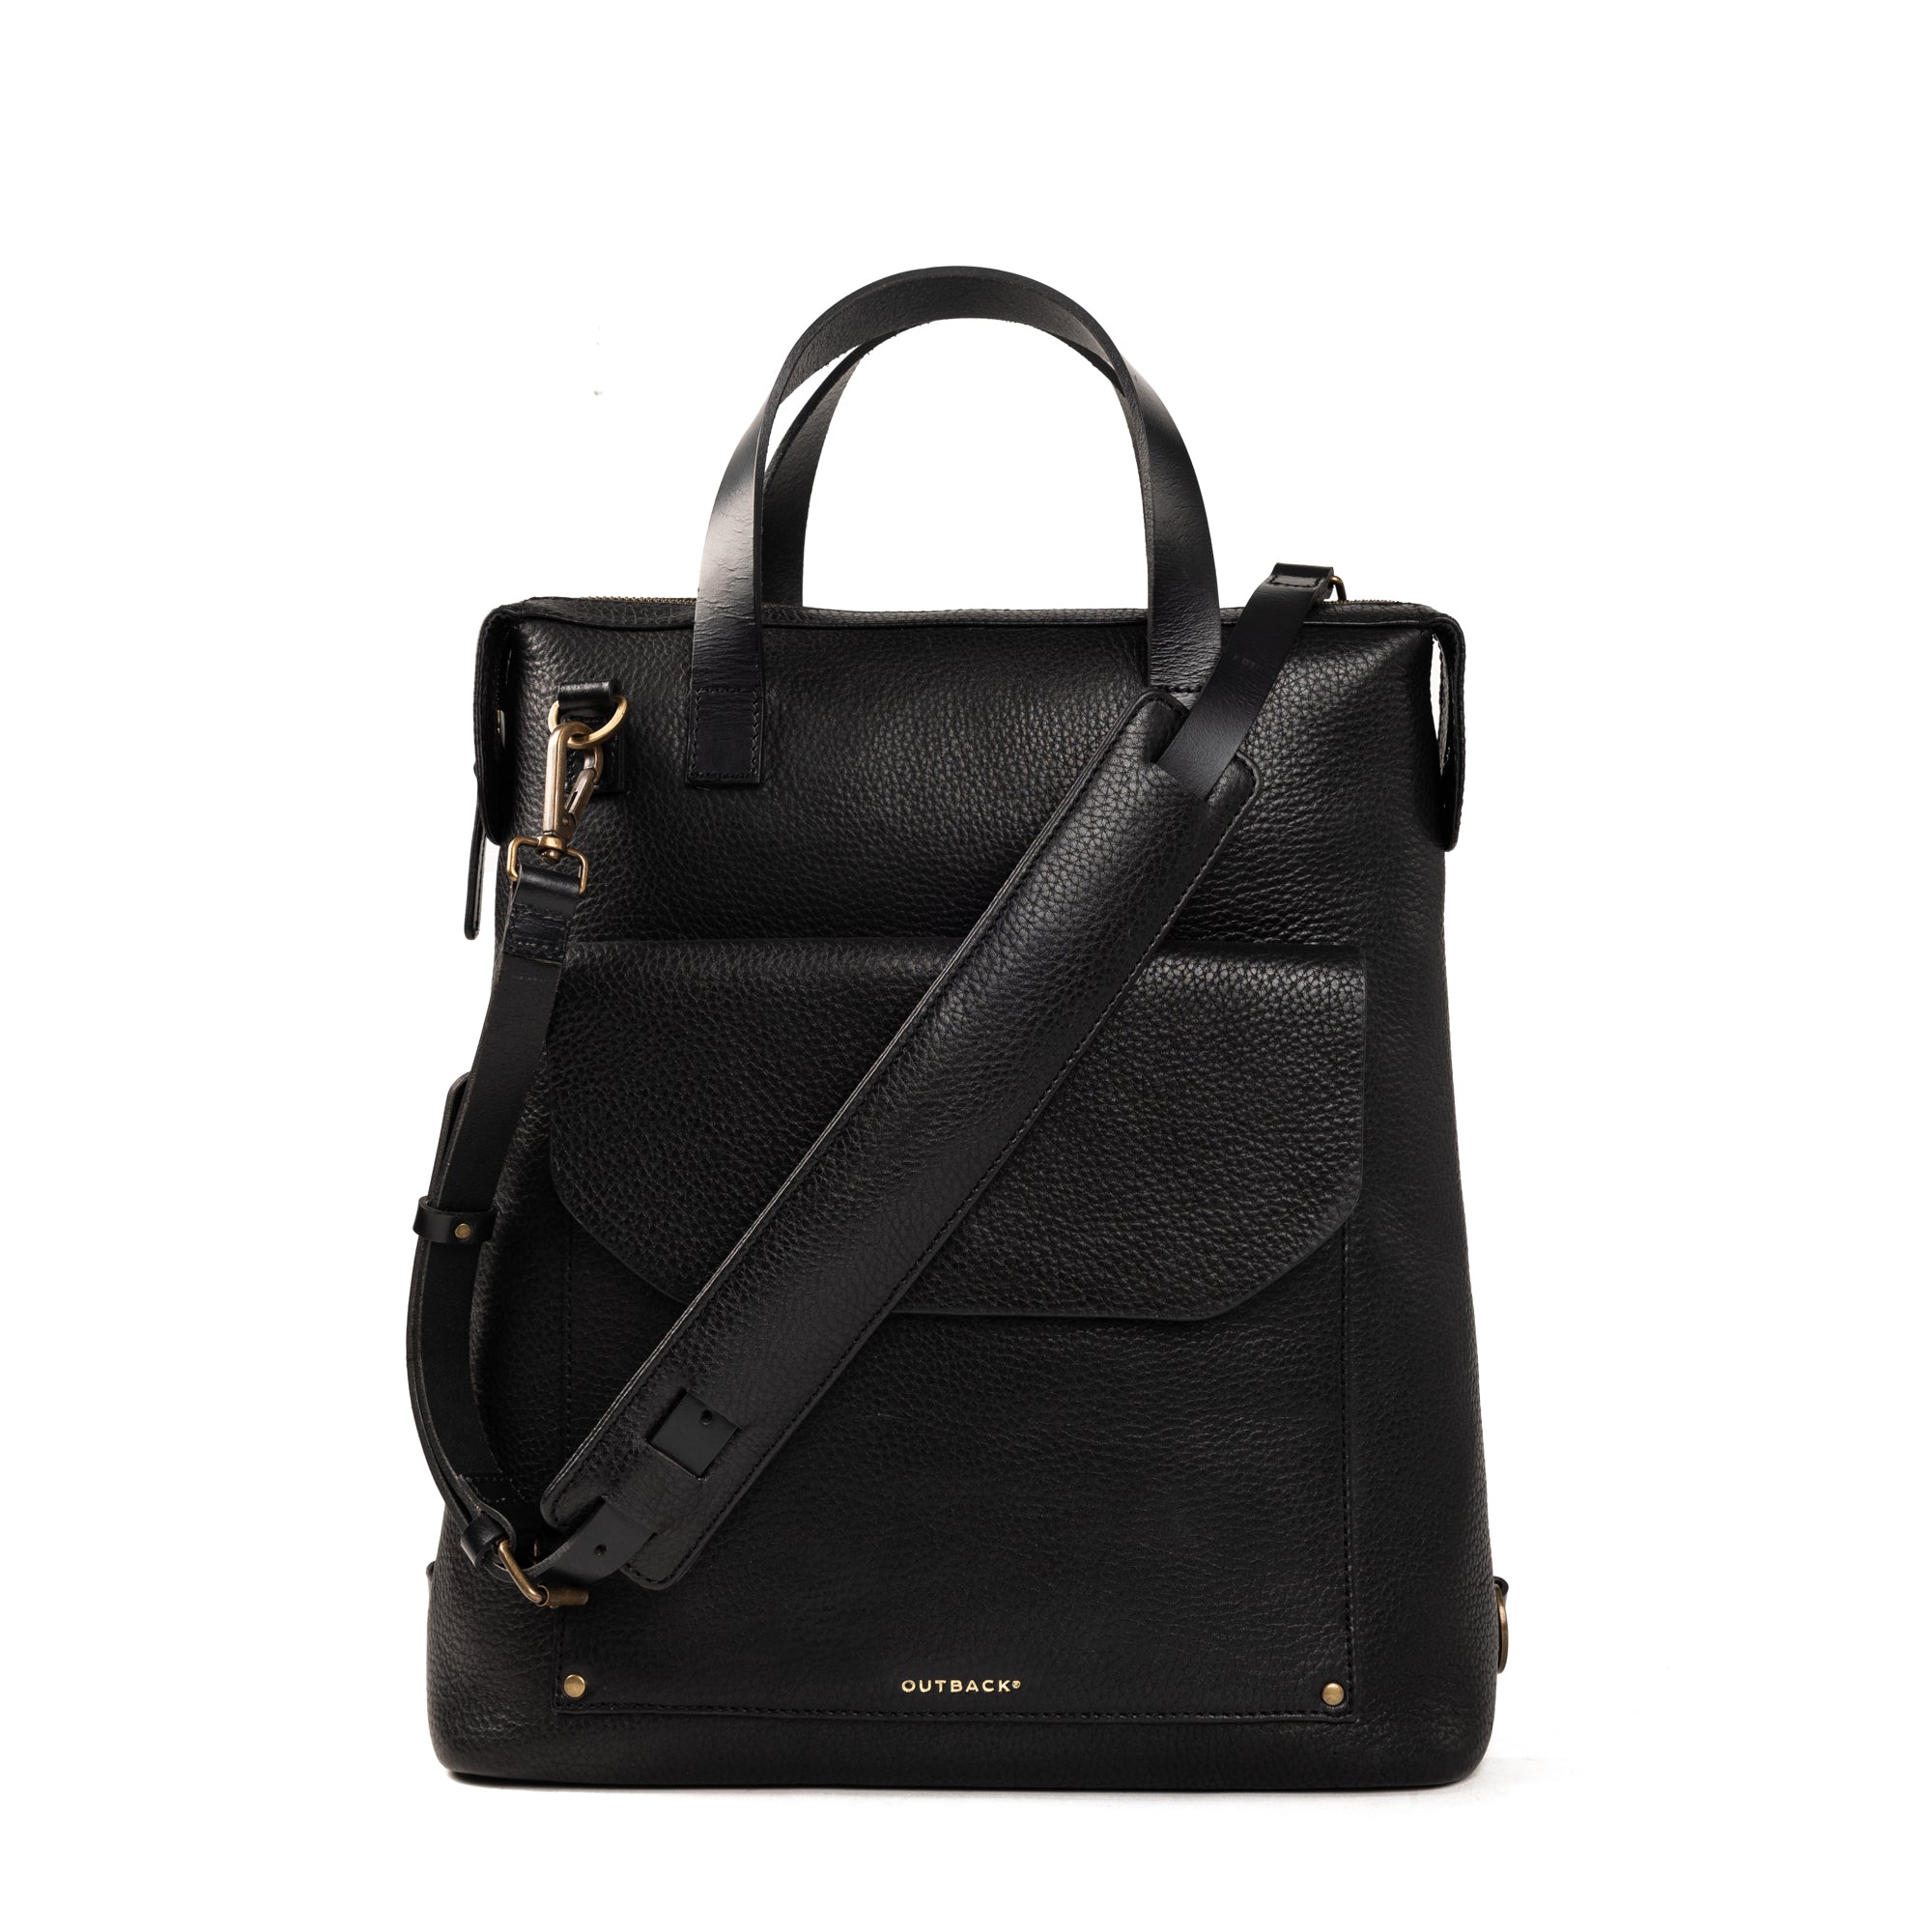 Opelle's Luxury Bespoke Bags…